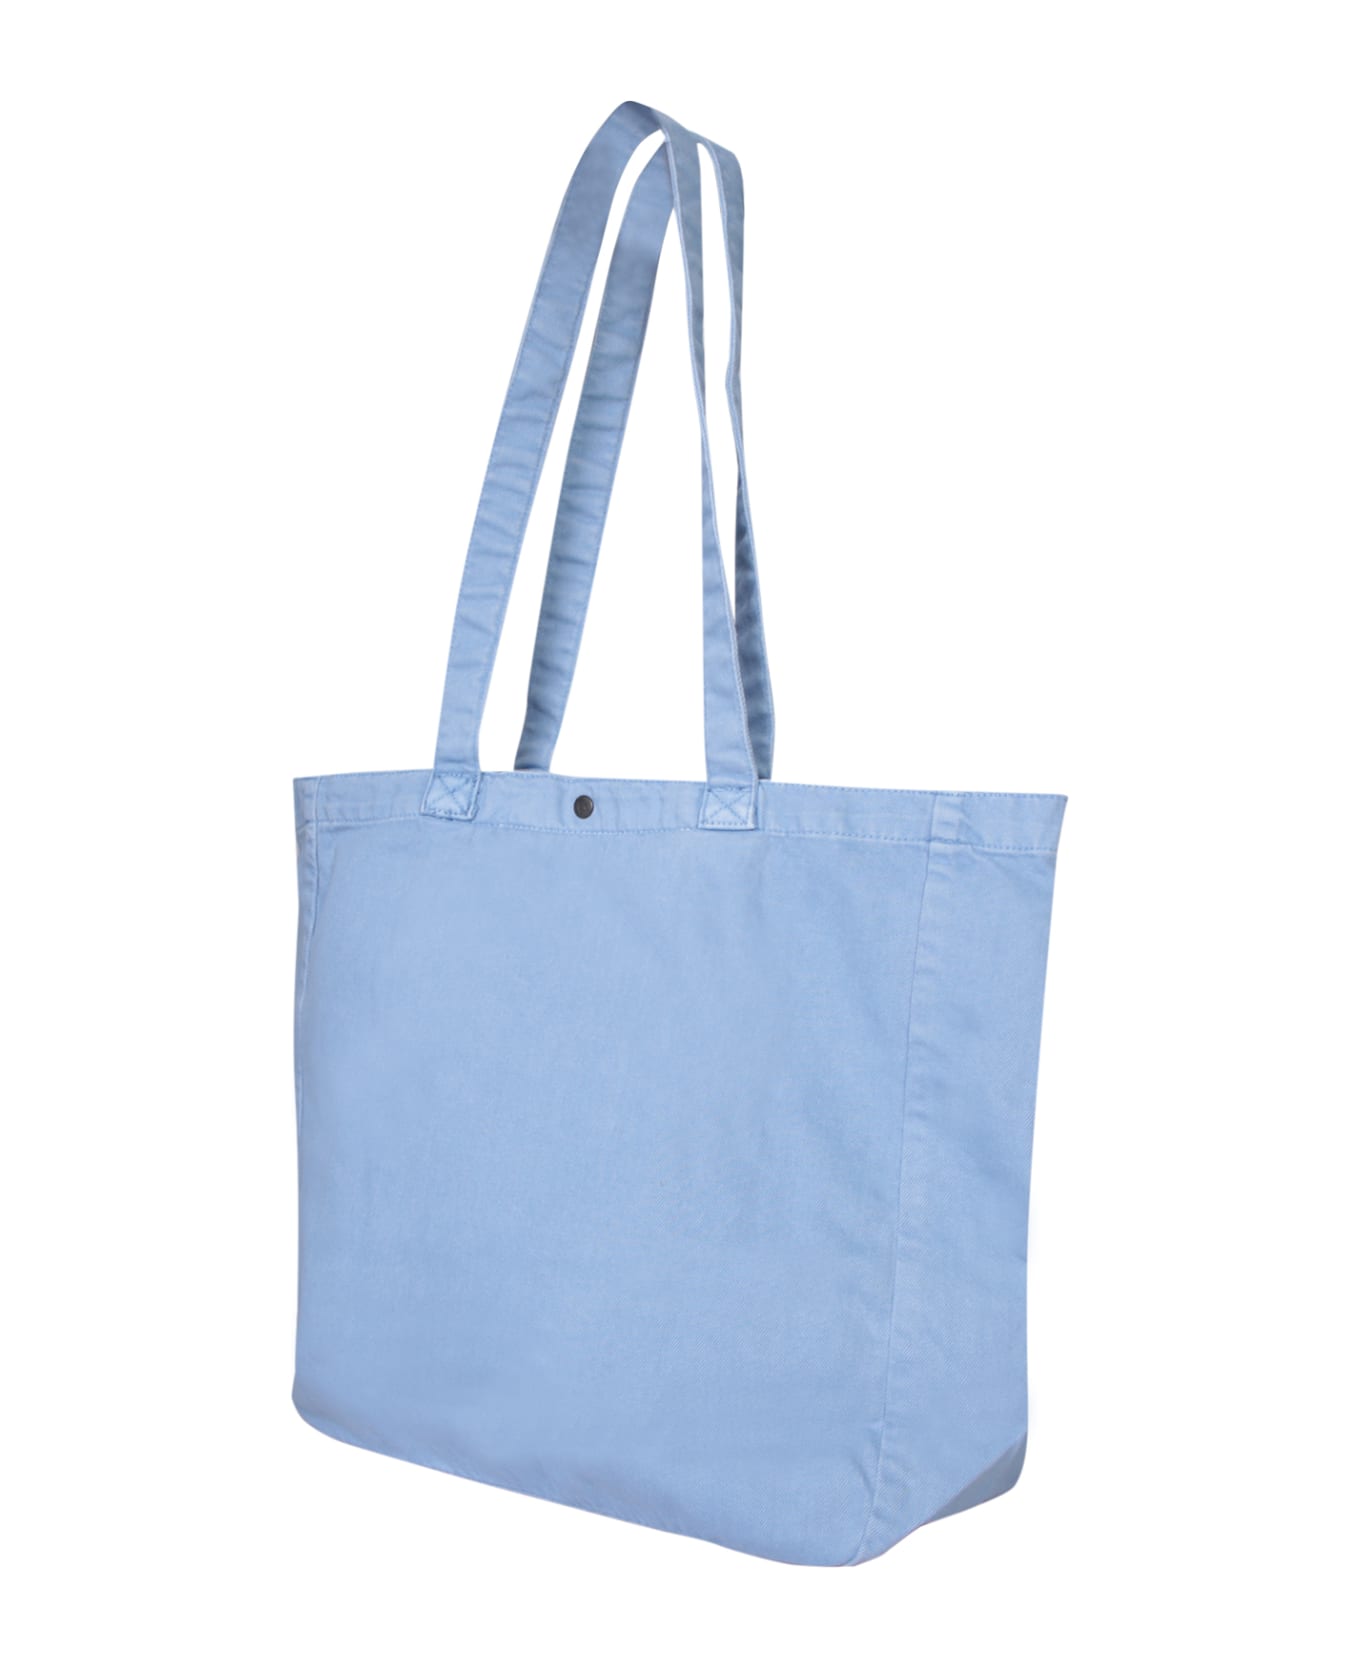 Carhartt Wip Garrison Bag In Blue - Blue トートバッグ